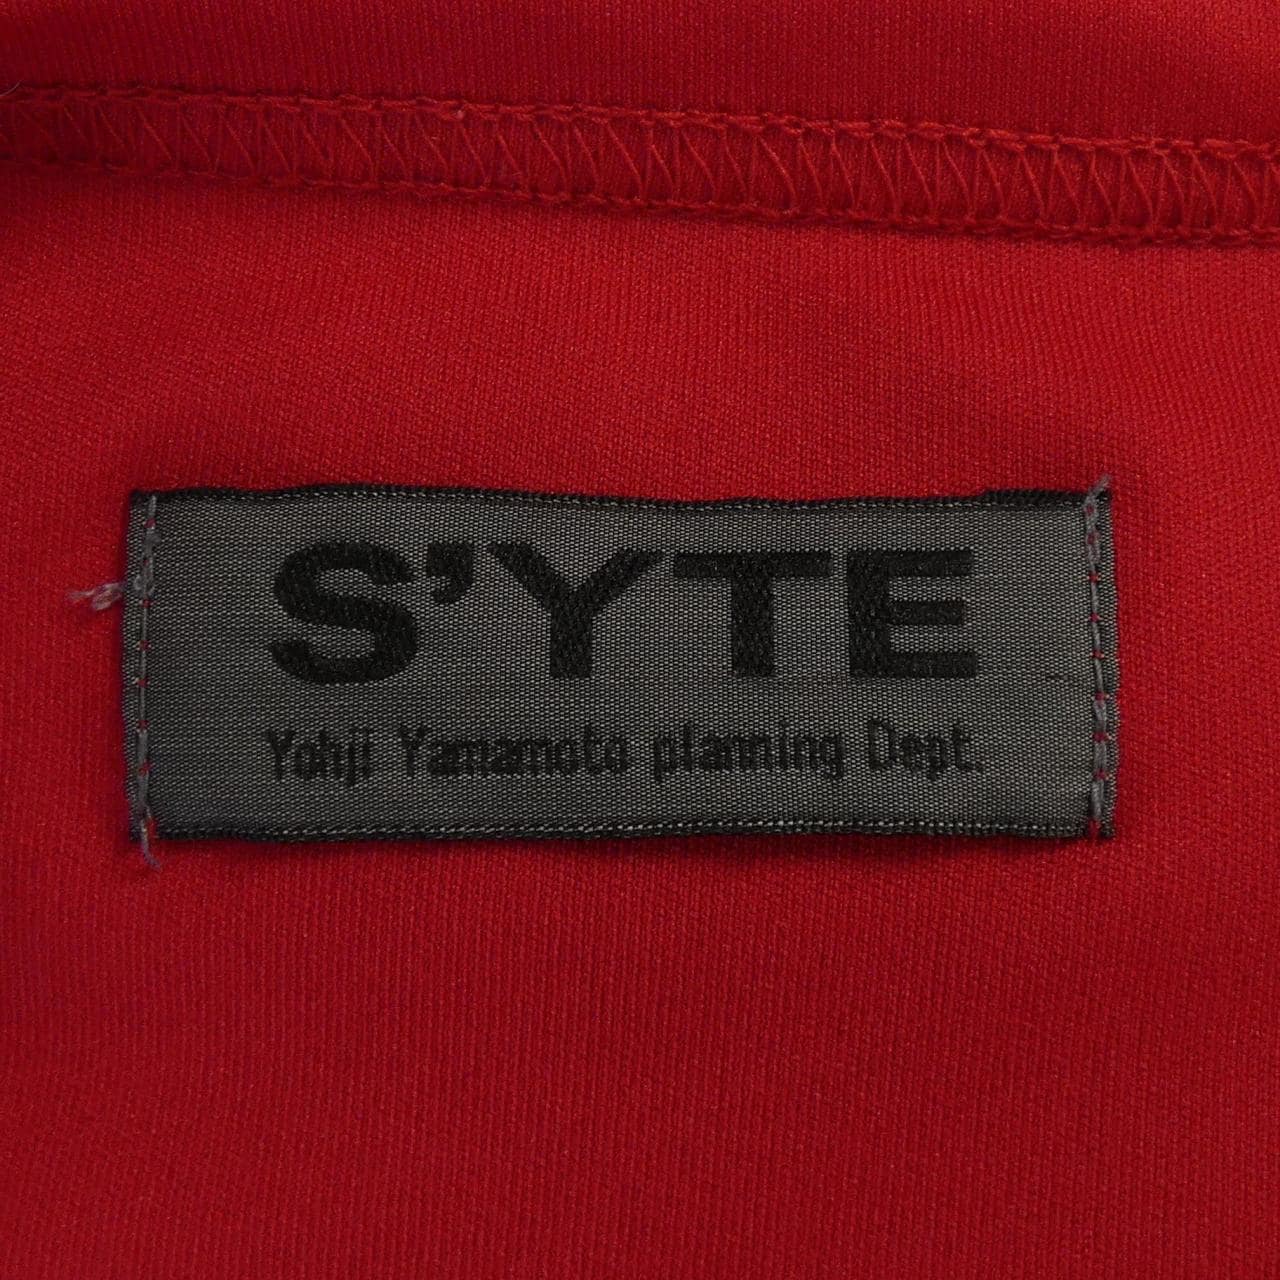 サイト S'YTE Tシャツ